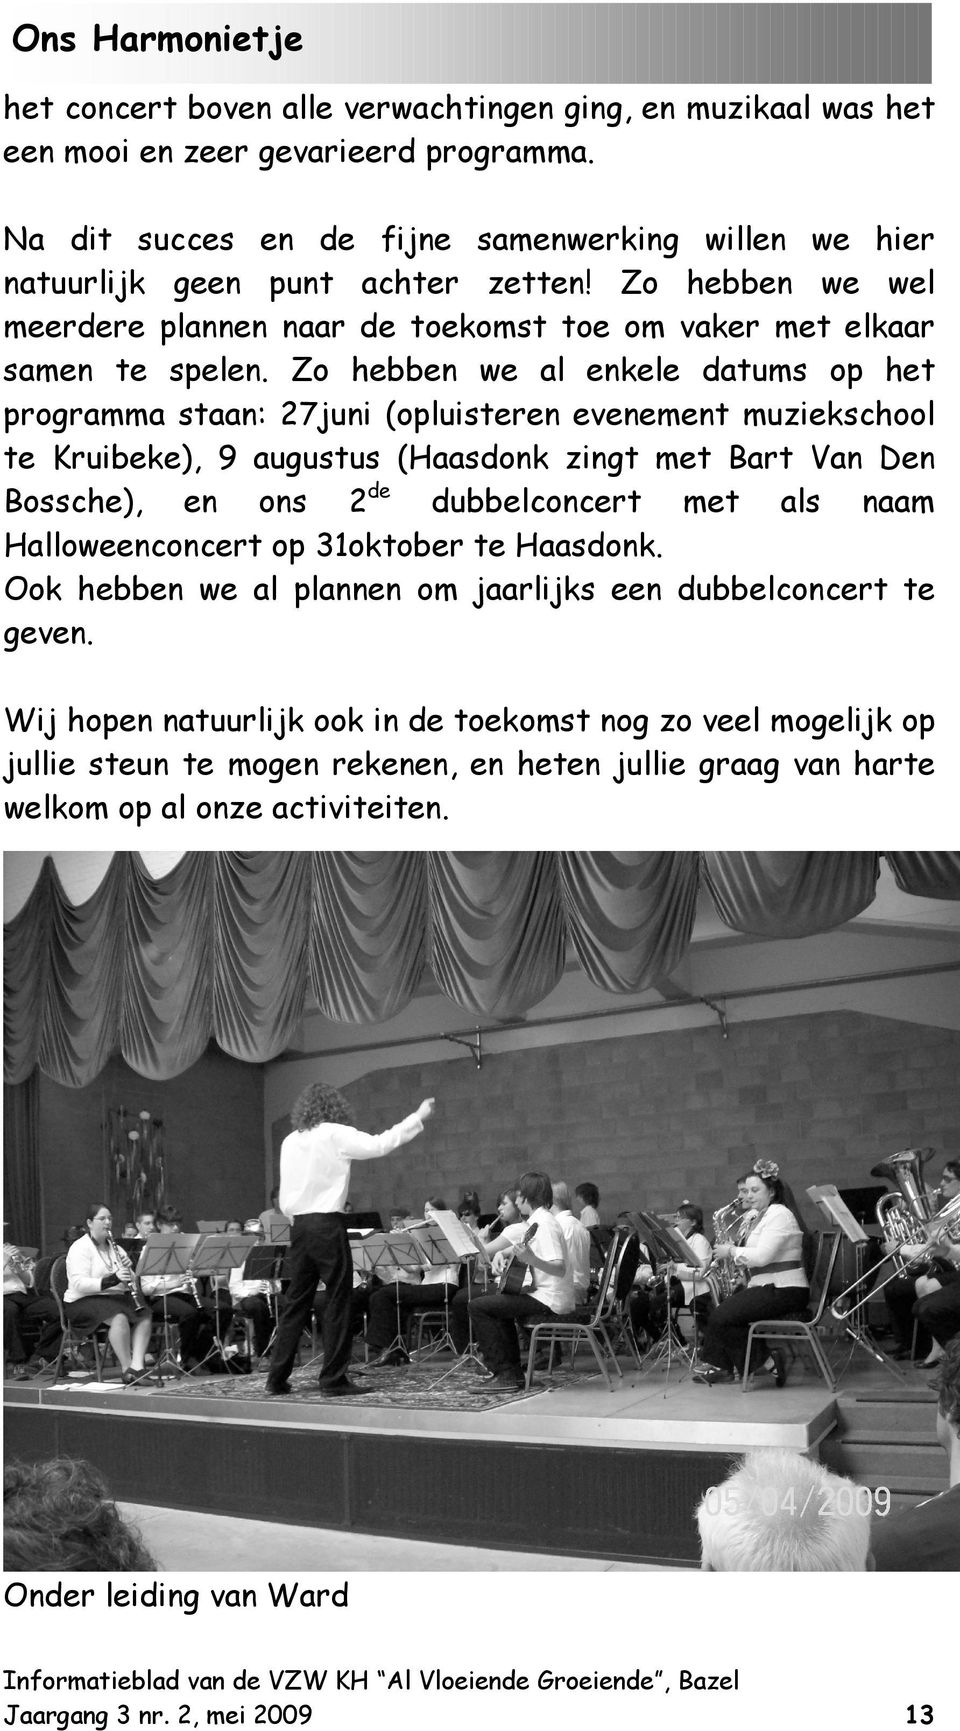 Zo hebben we al enkele datums op het programma staan: 27juni (opluisteren evenement muziekschool te Kruibeke), 9 augustus (Haasdonk zingt met Bart Van Den Bossche), en ons 2de dubbelconcert met als